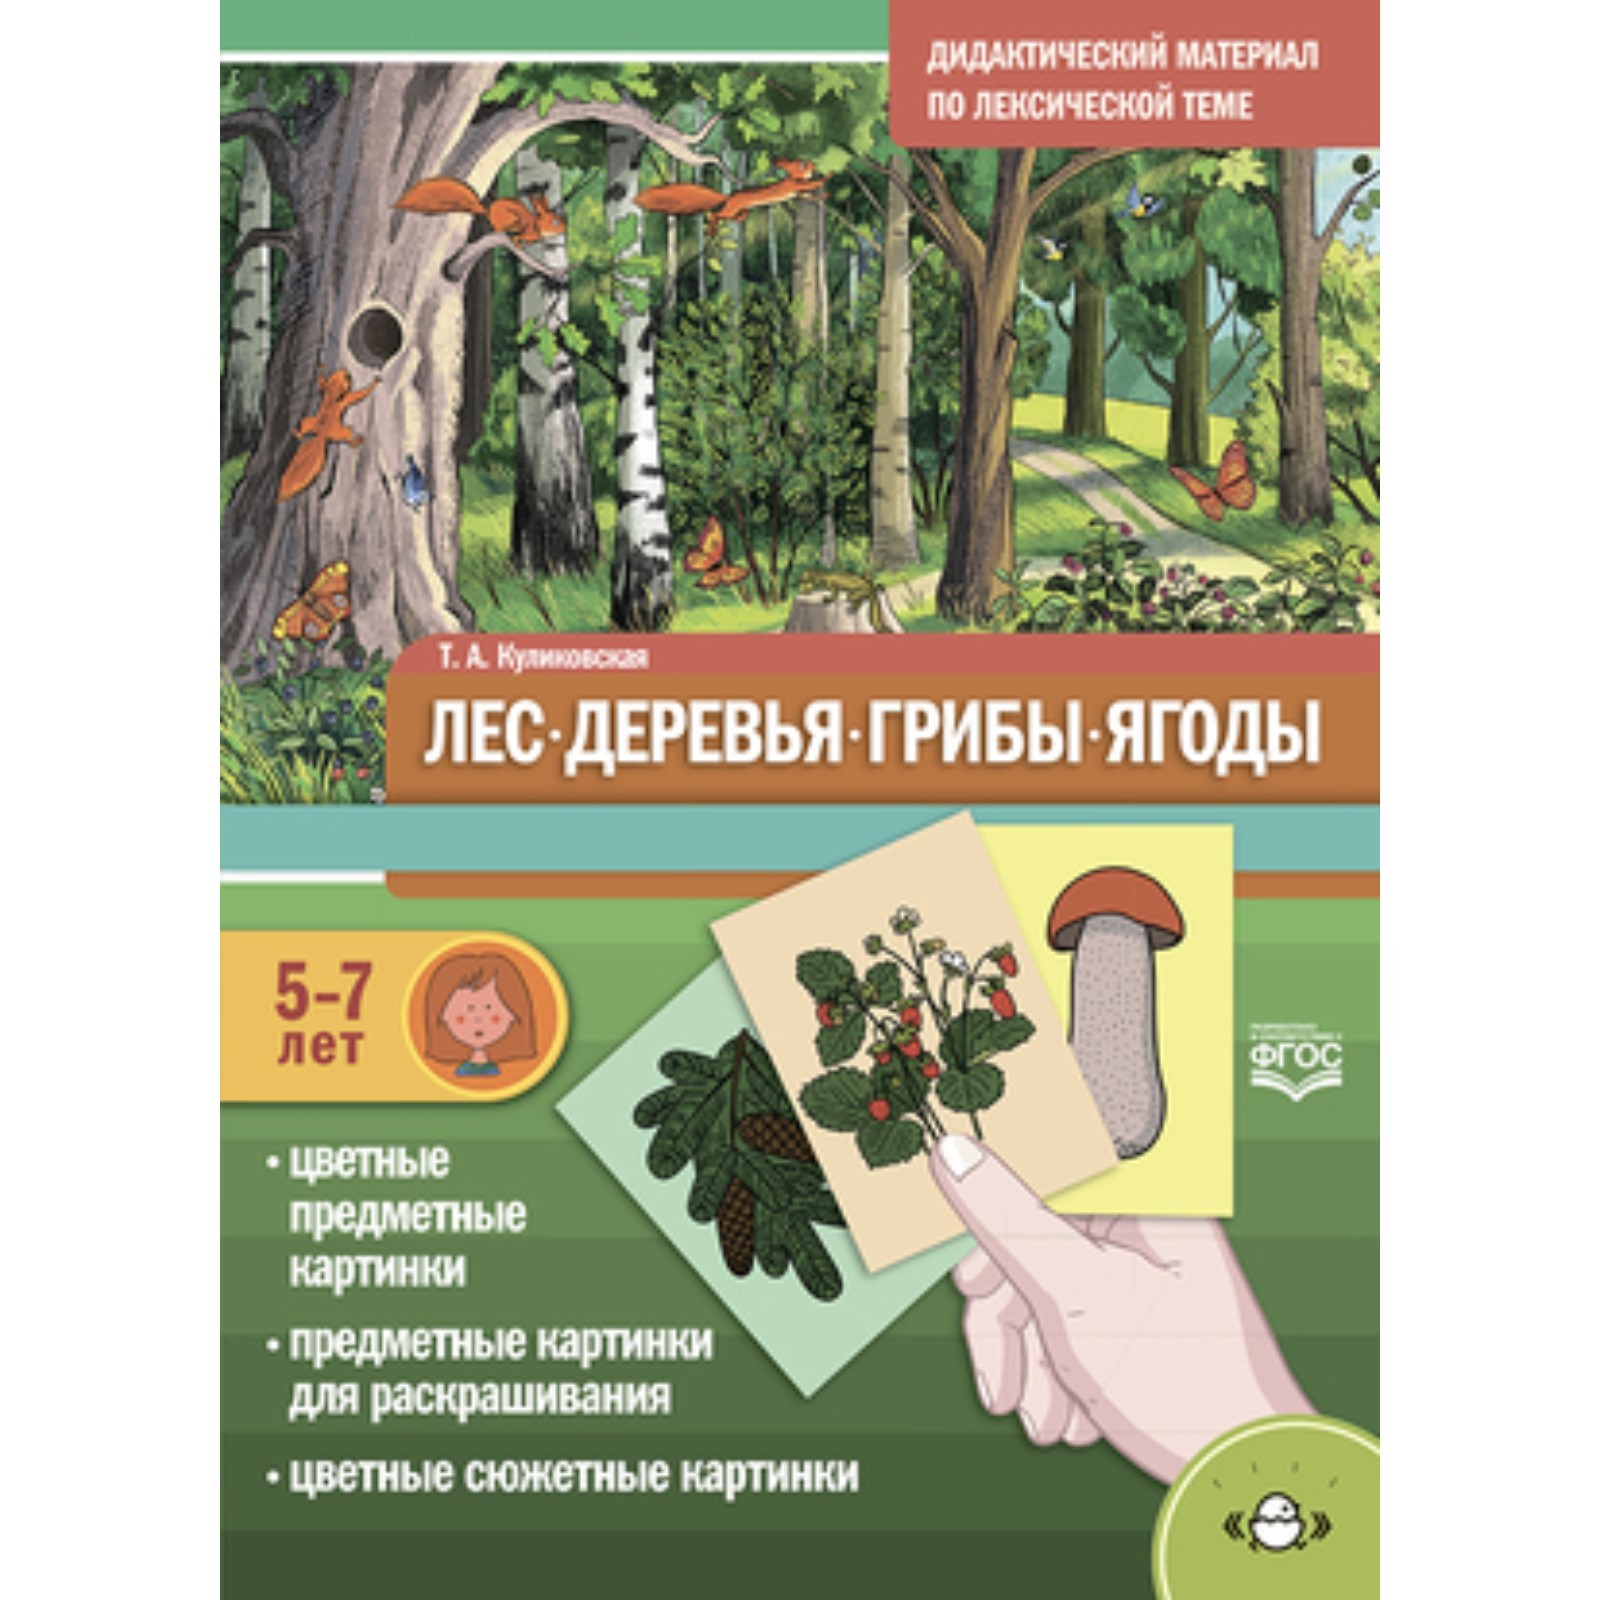 Аграрии Крыма начали высаживать плодово-ягодные деревья